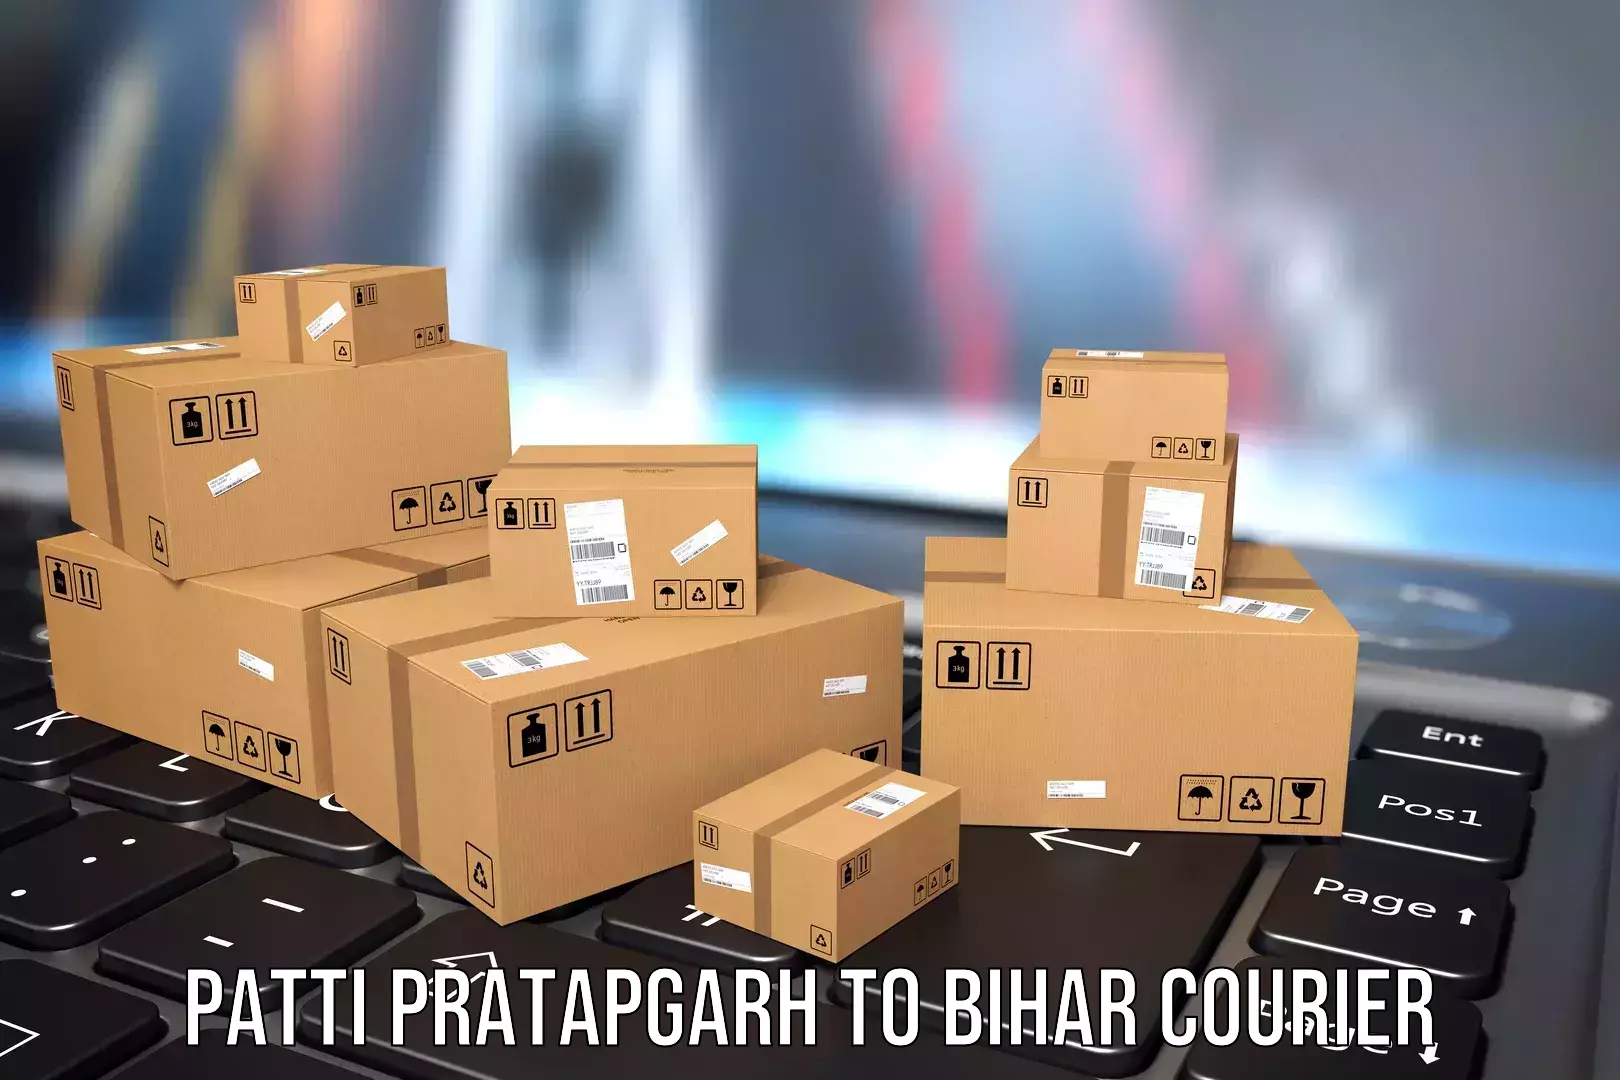 Luggage shipment specialists Patti Pratapgarh to Tribeniganj